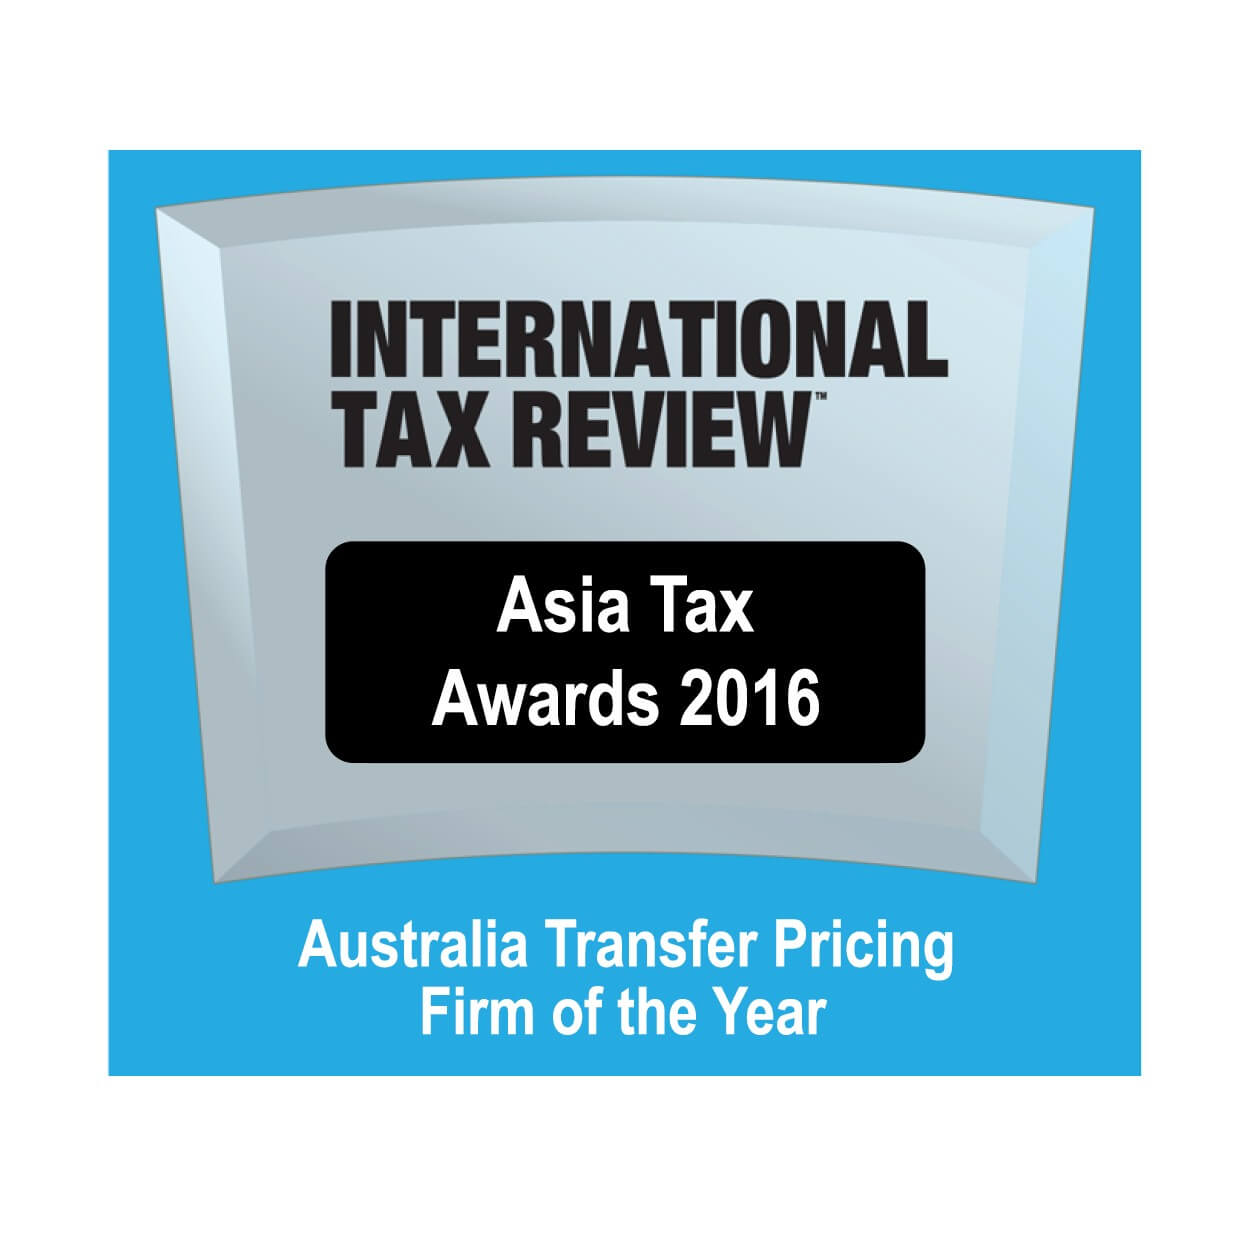 Asia Tax Awards 2016